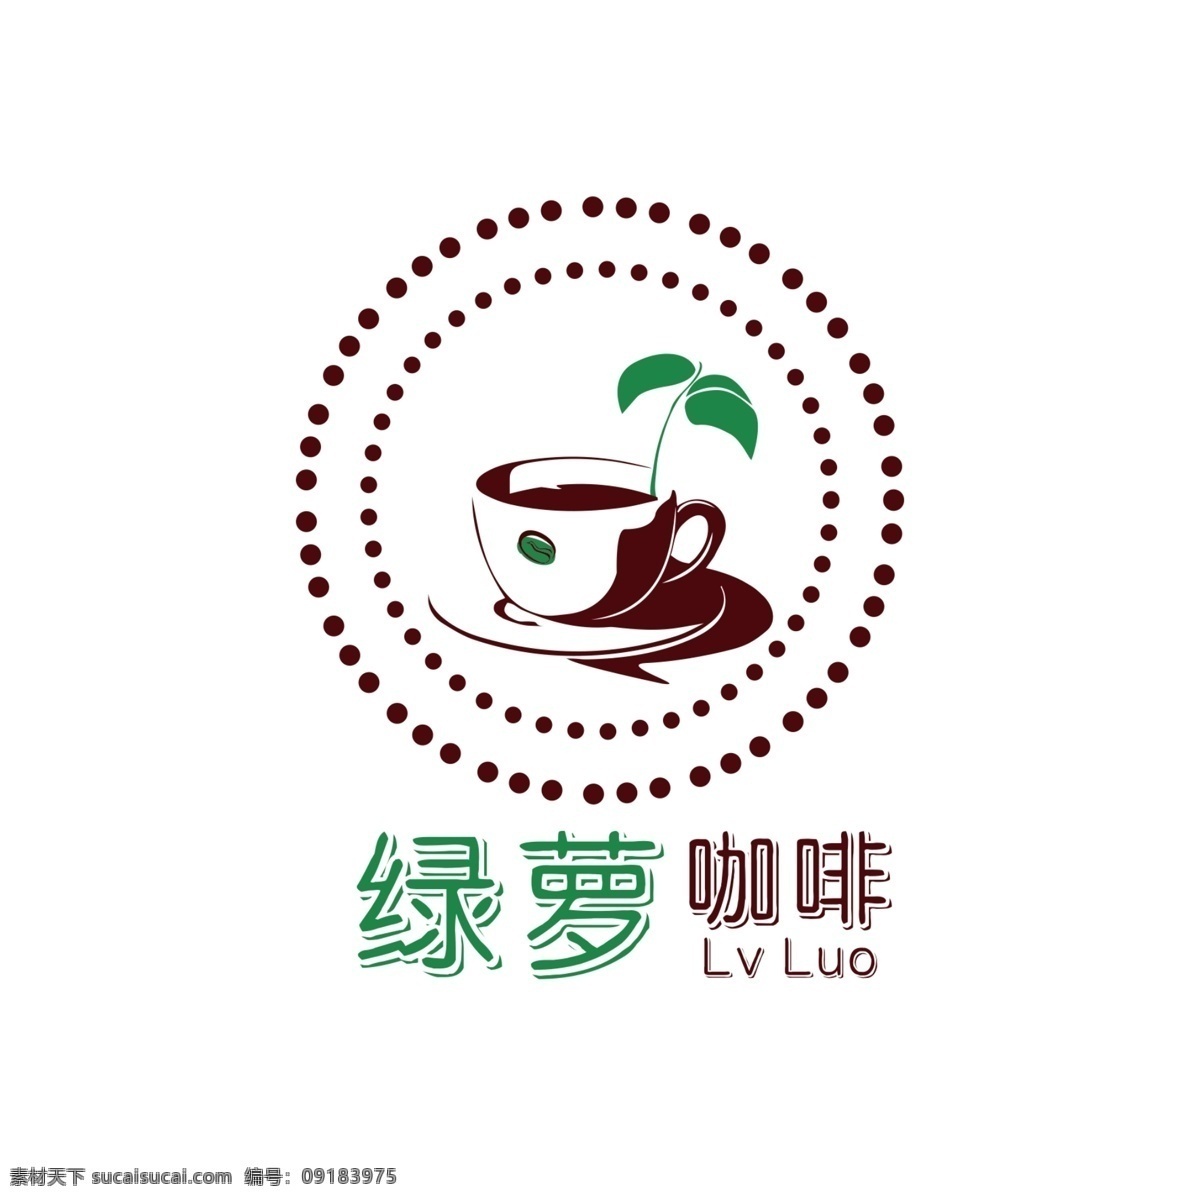 绿萝logo 绿萝咖啡 健康 绿色